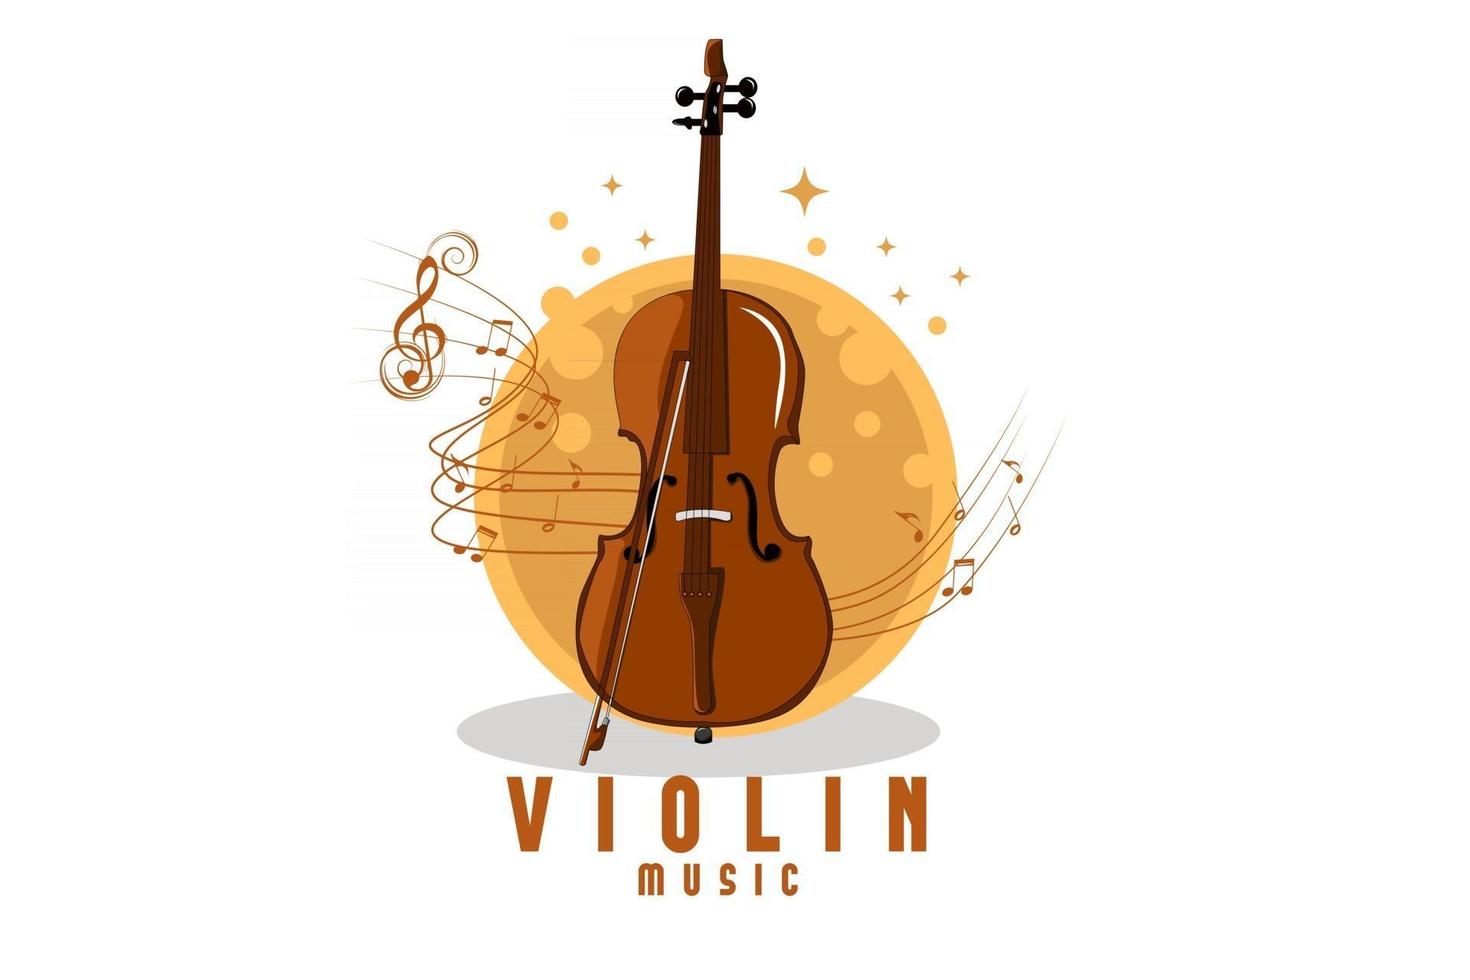 conception d'illustration de musique de violon vecteur